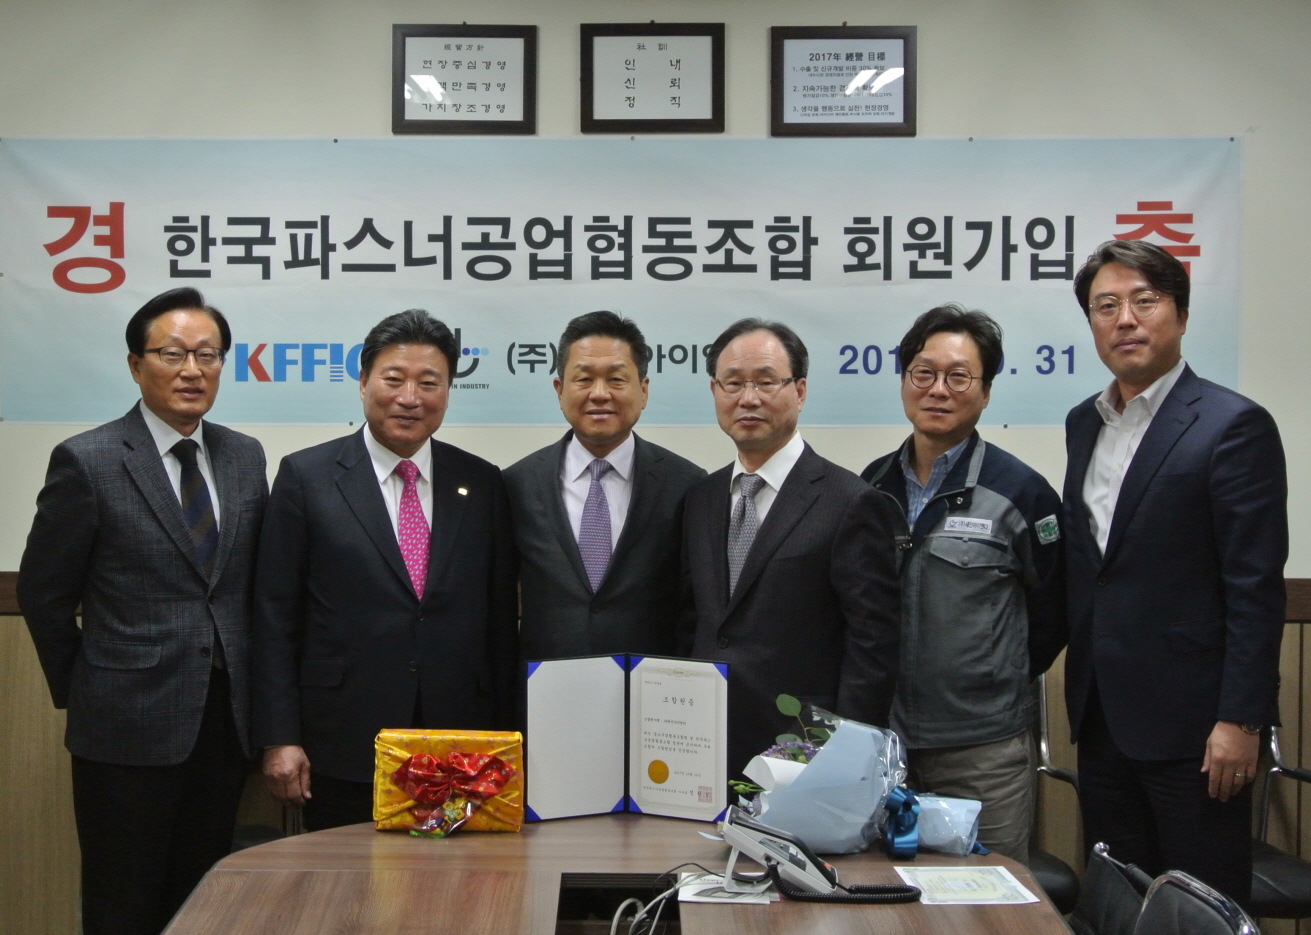 신규 조합원사 (주)세인아이엔디 방문 축하